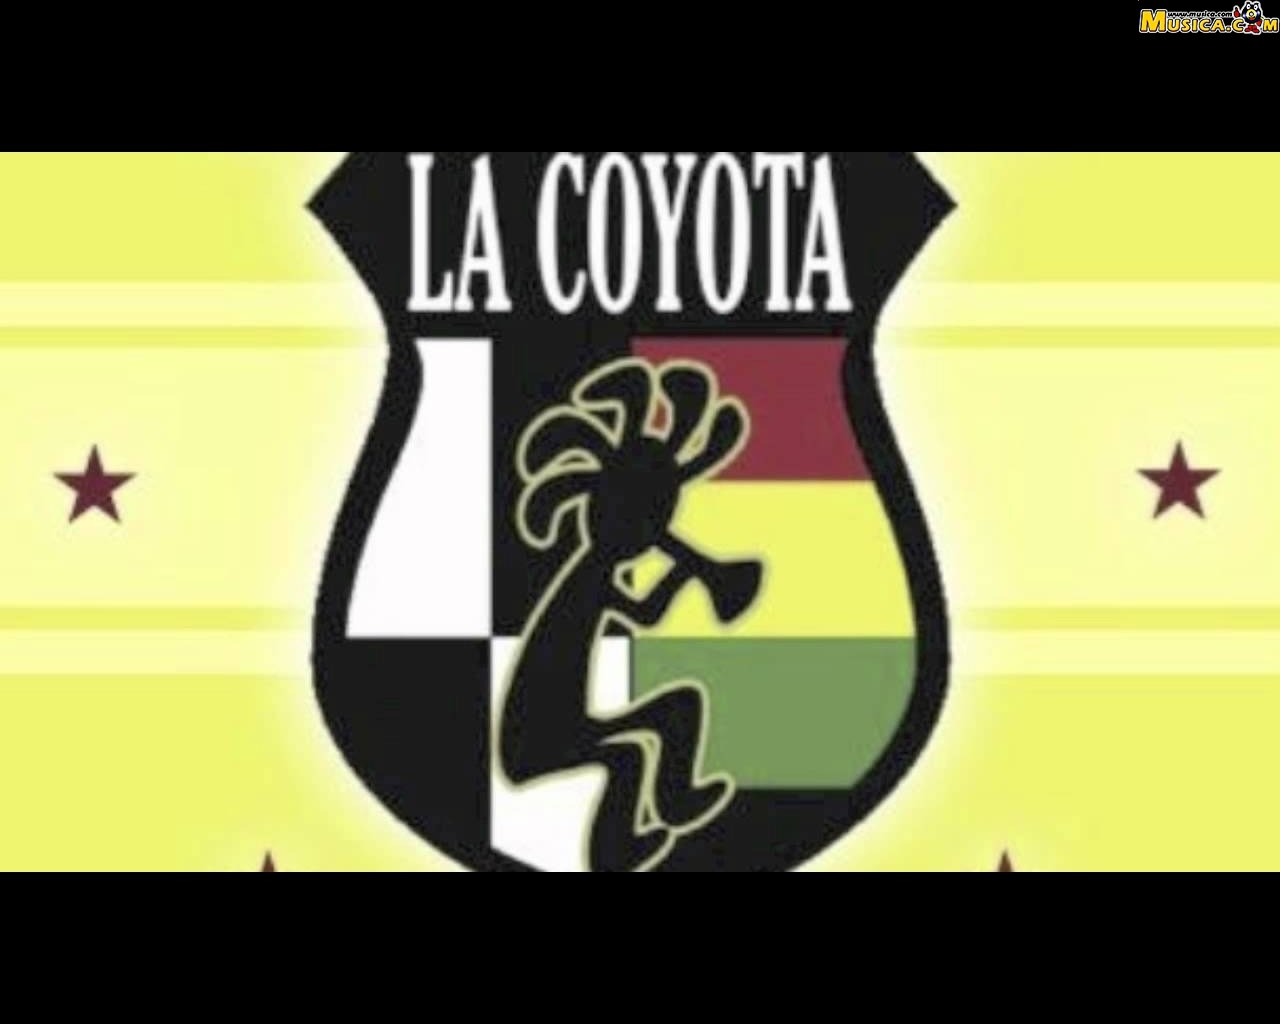 Fondo de pantalla de La Coyota